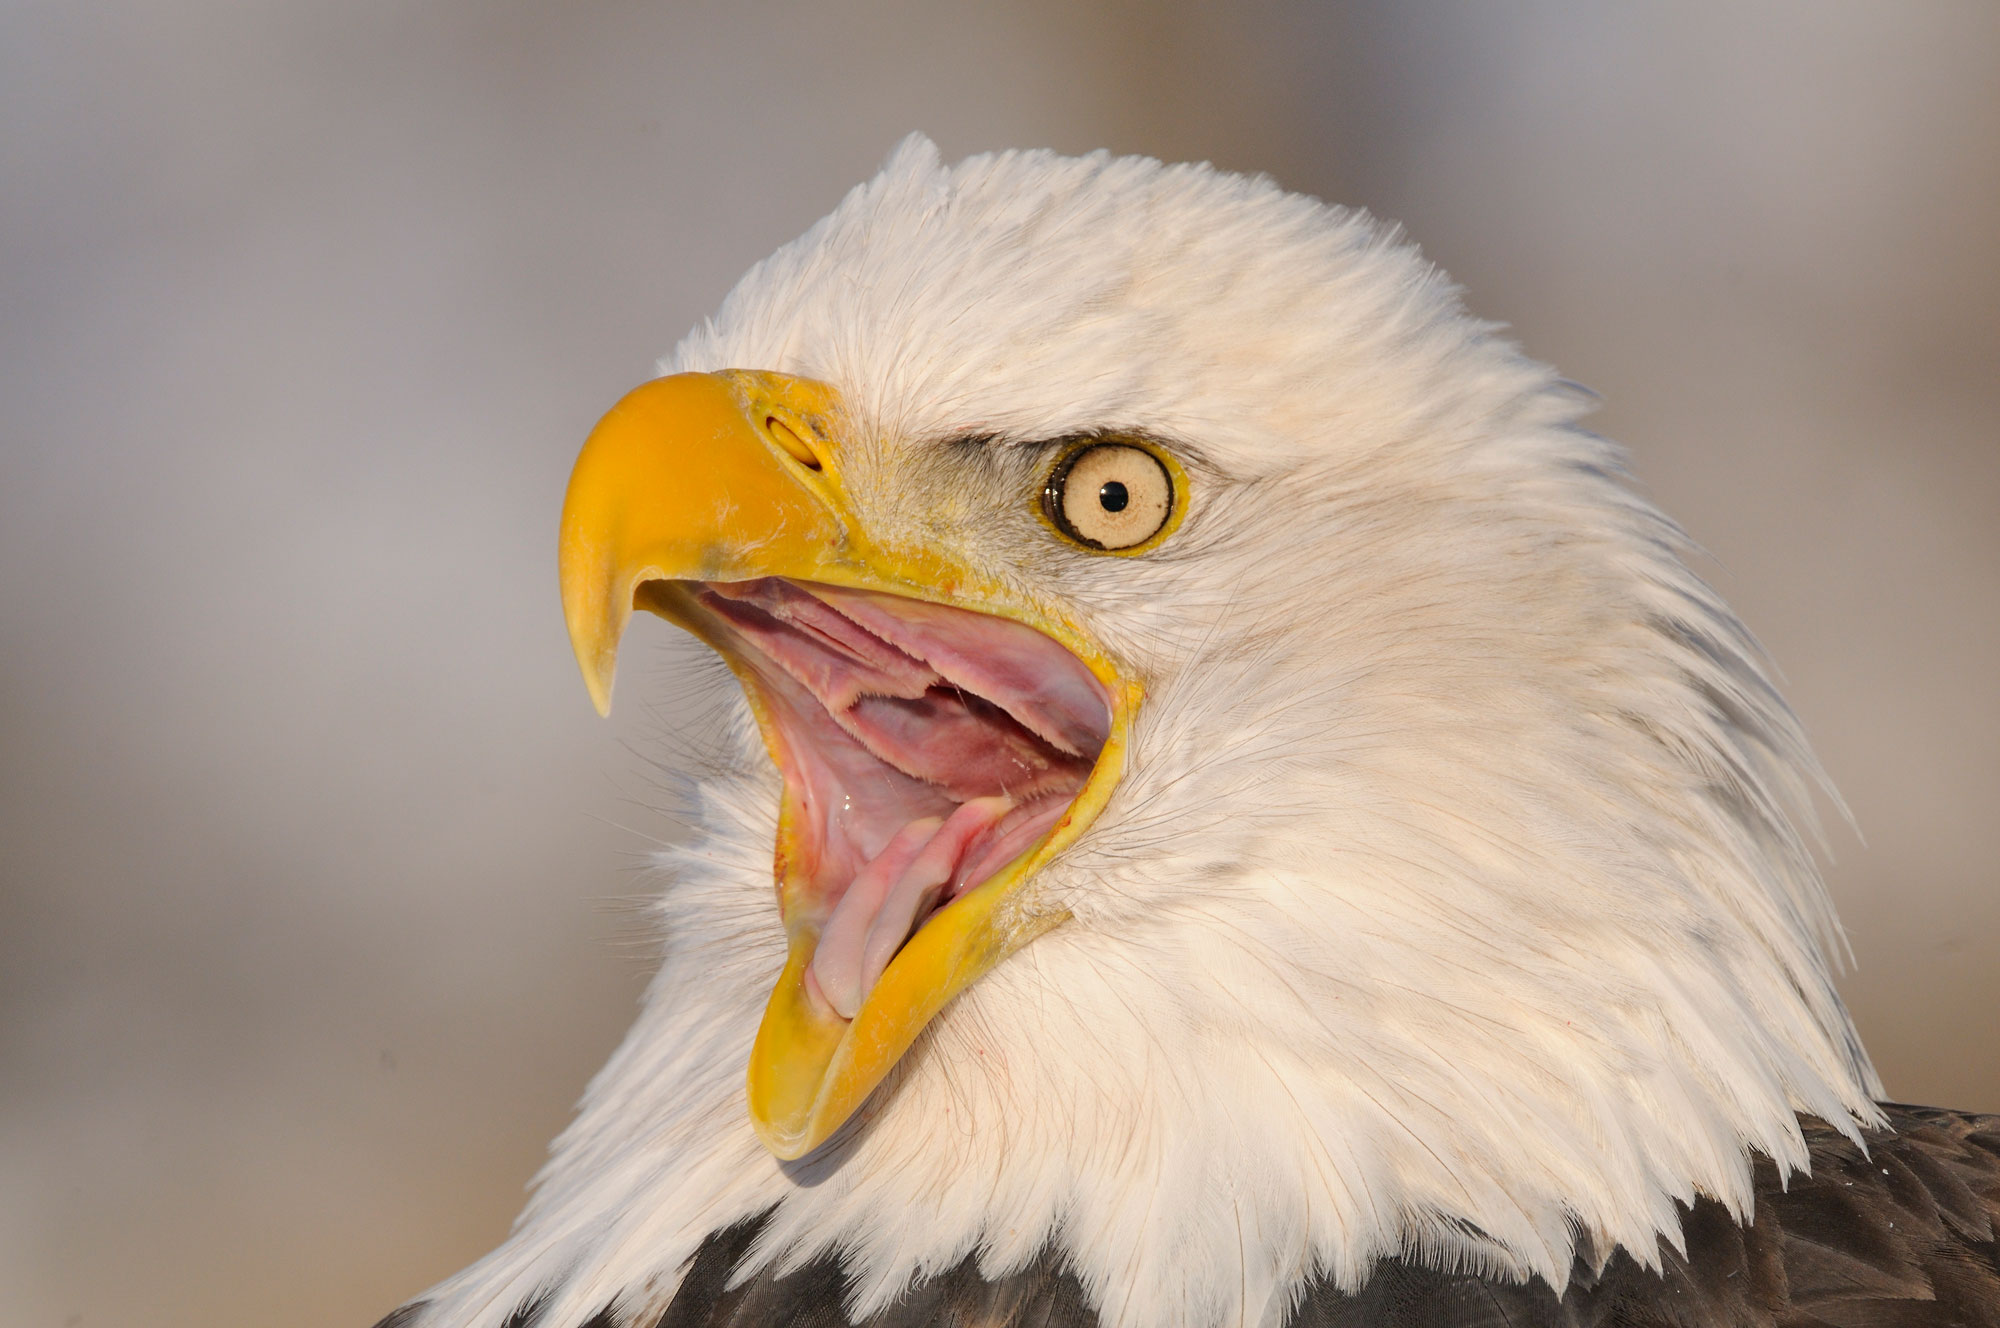 Alaska Bald Eagle Photo Tour Bald Eagle Photography